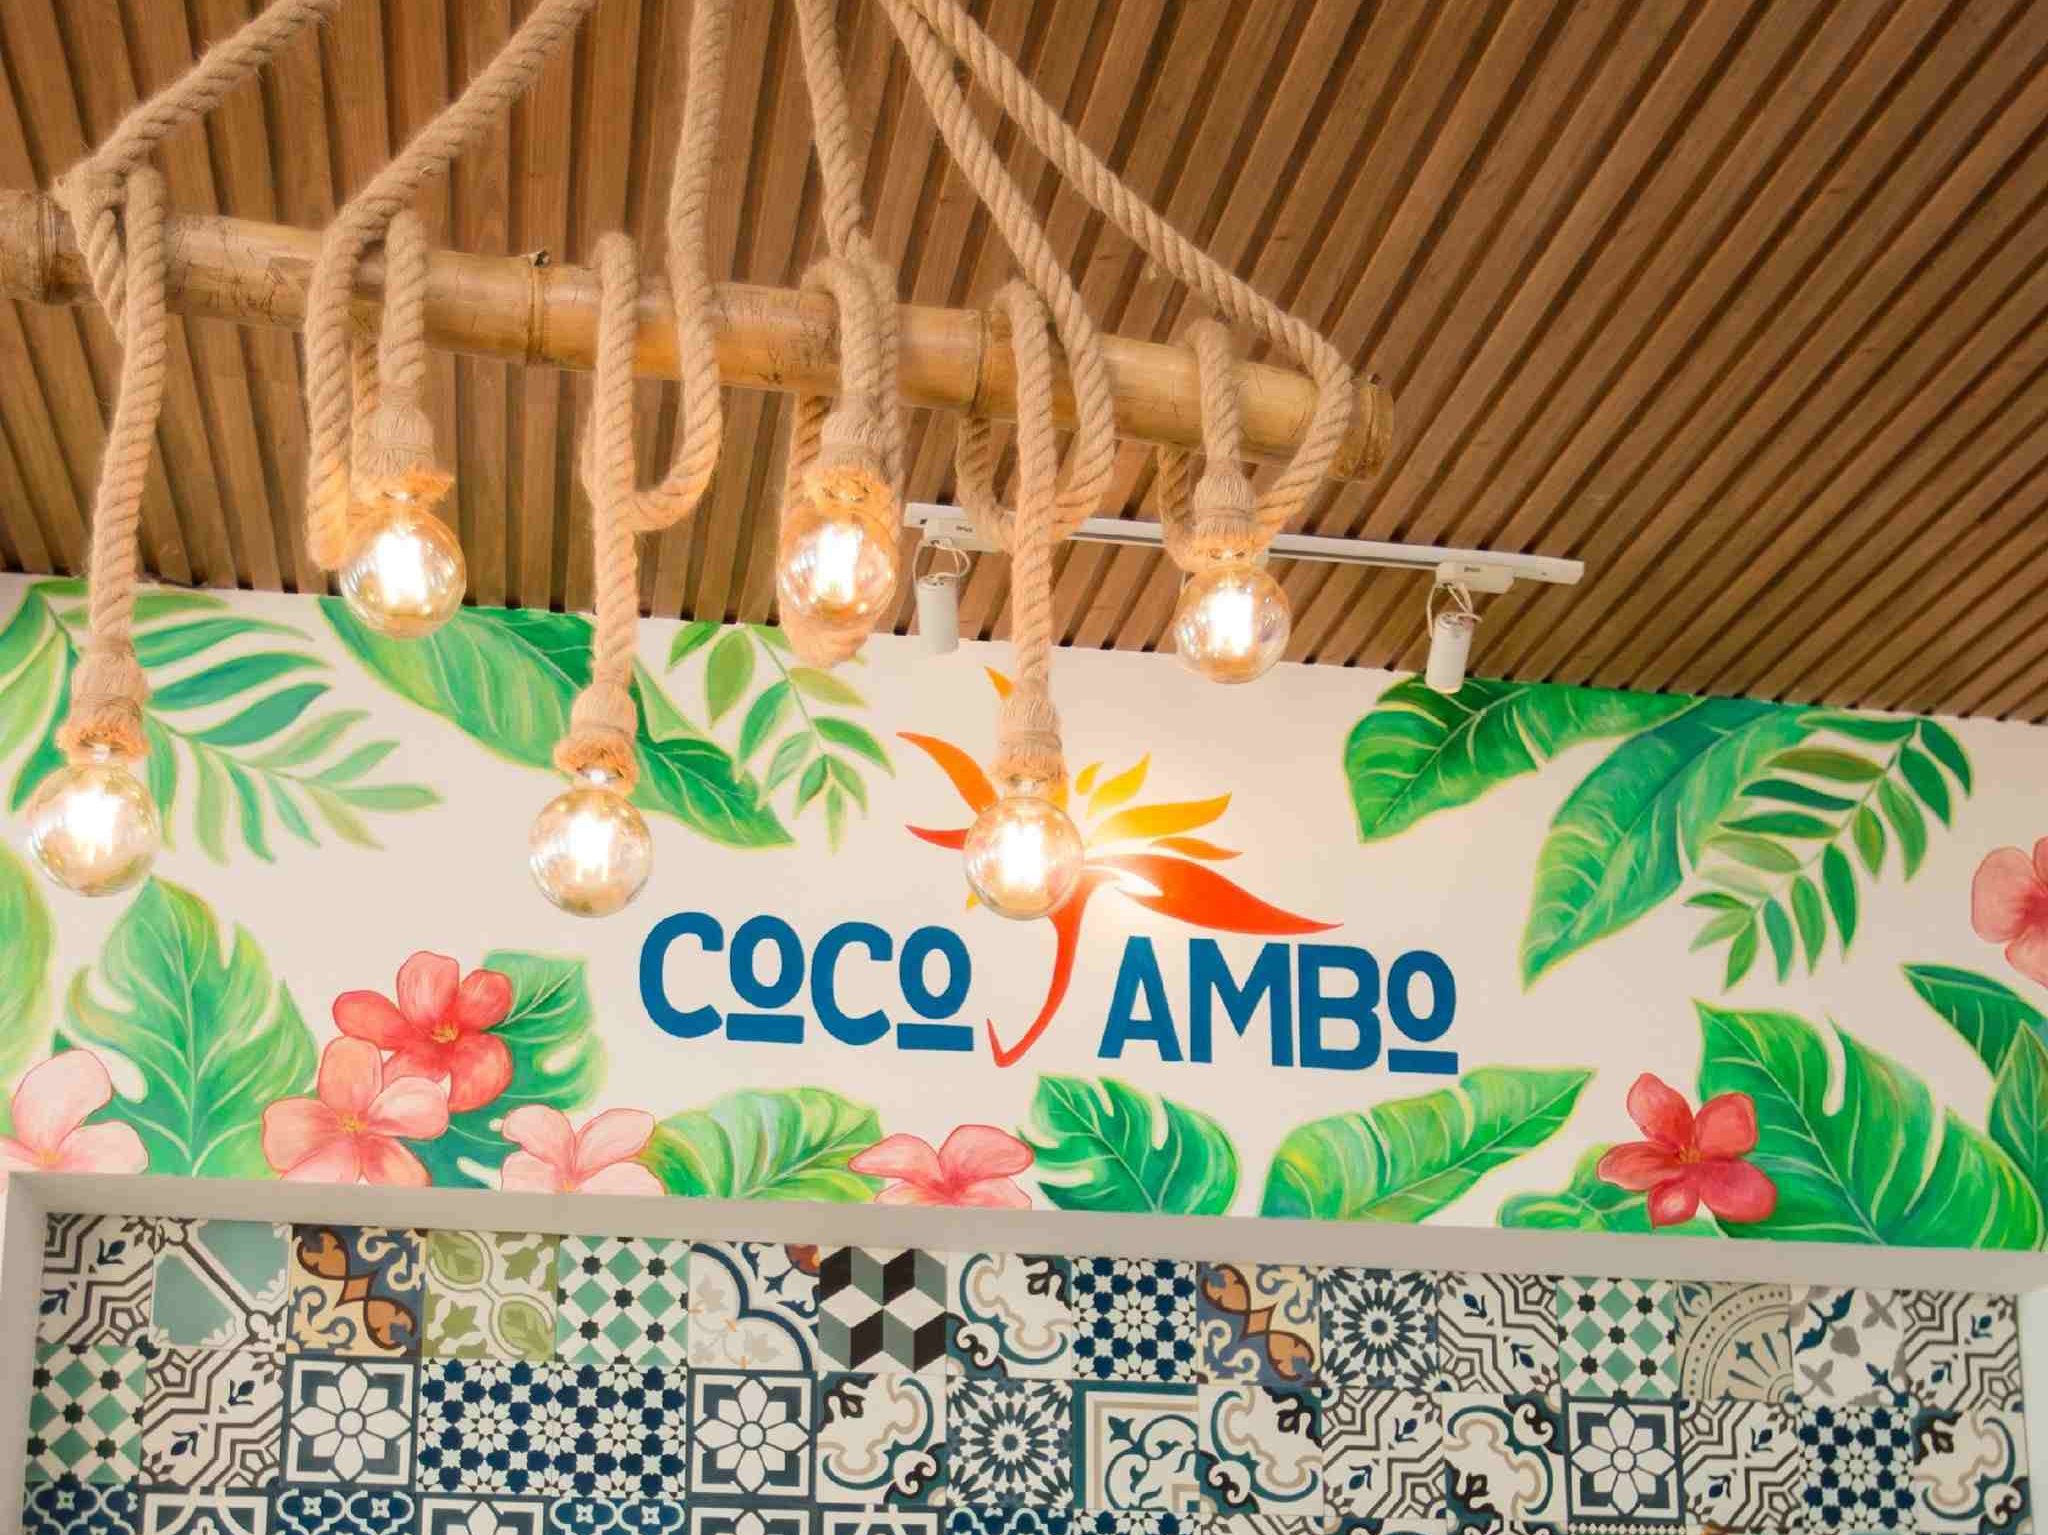 Coco Jambo - Top quán ăn hải sản Eo Gió cực chất lượng